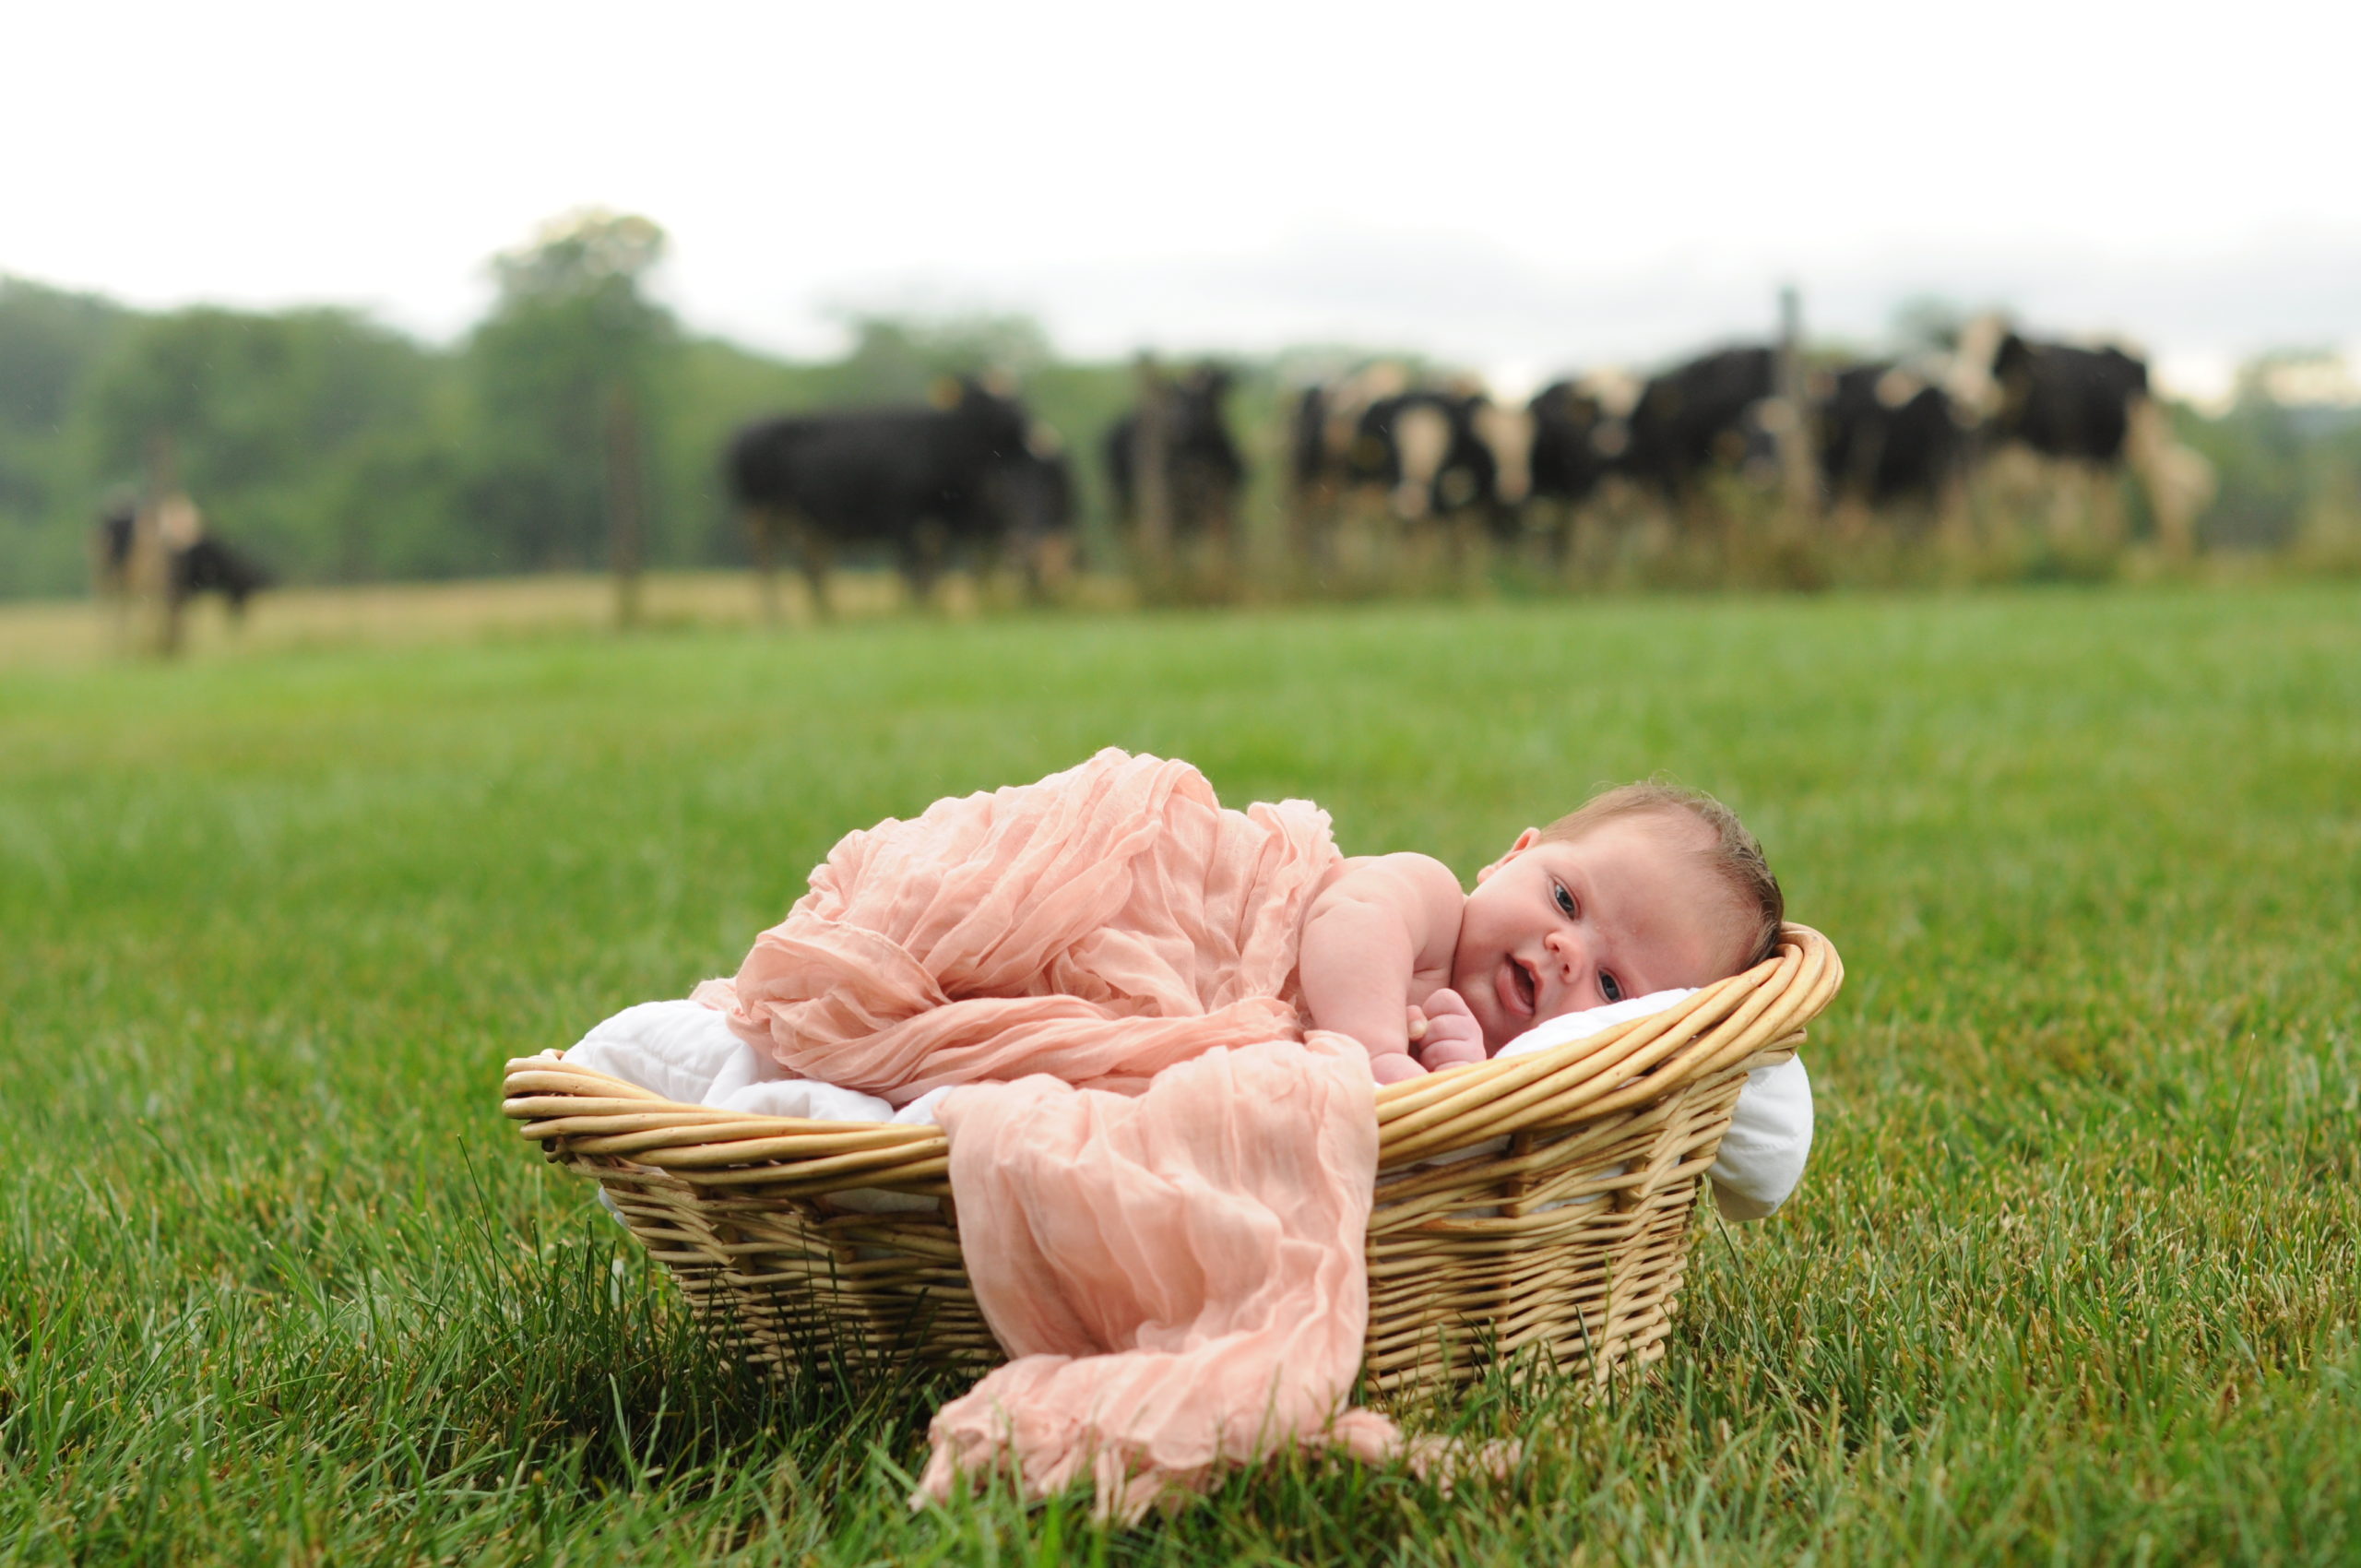 DSC_0461-scaled Edit of Newborn Baby on a Farm  